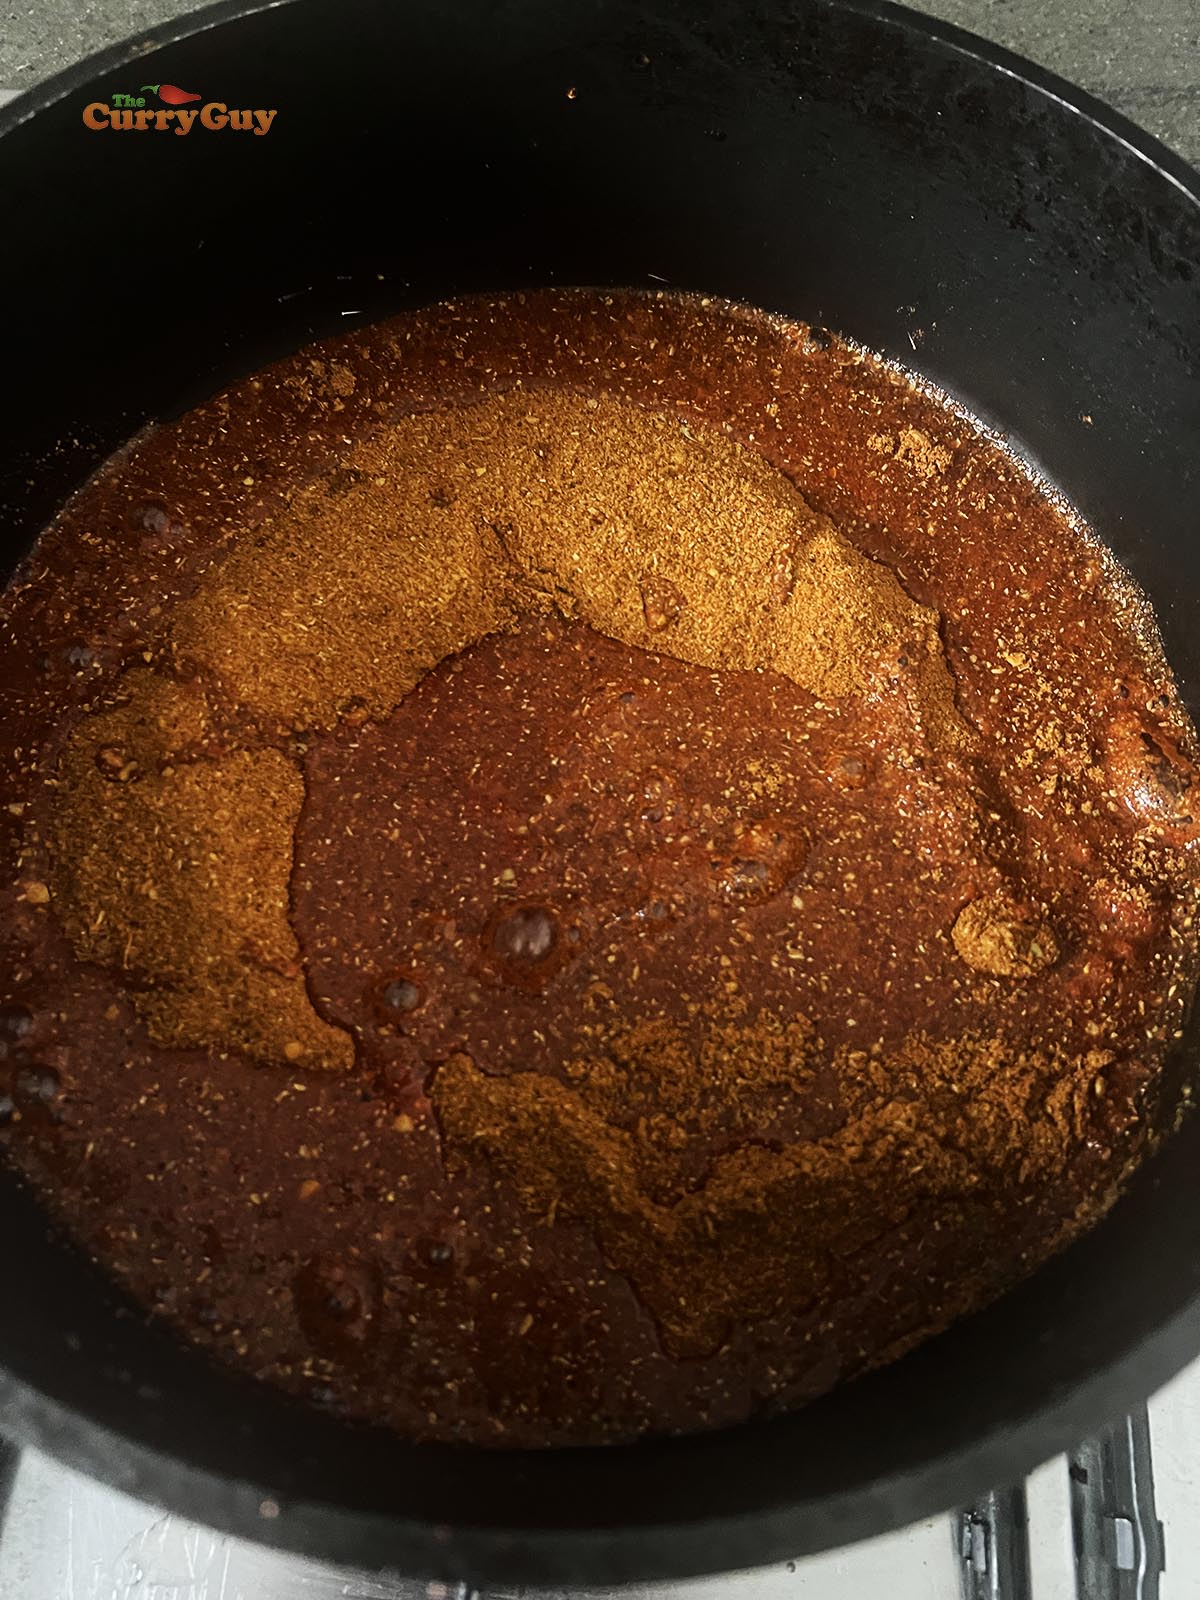 Adding water to tandoori masala powder in a pan.